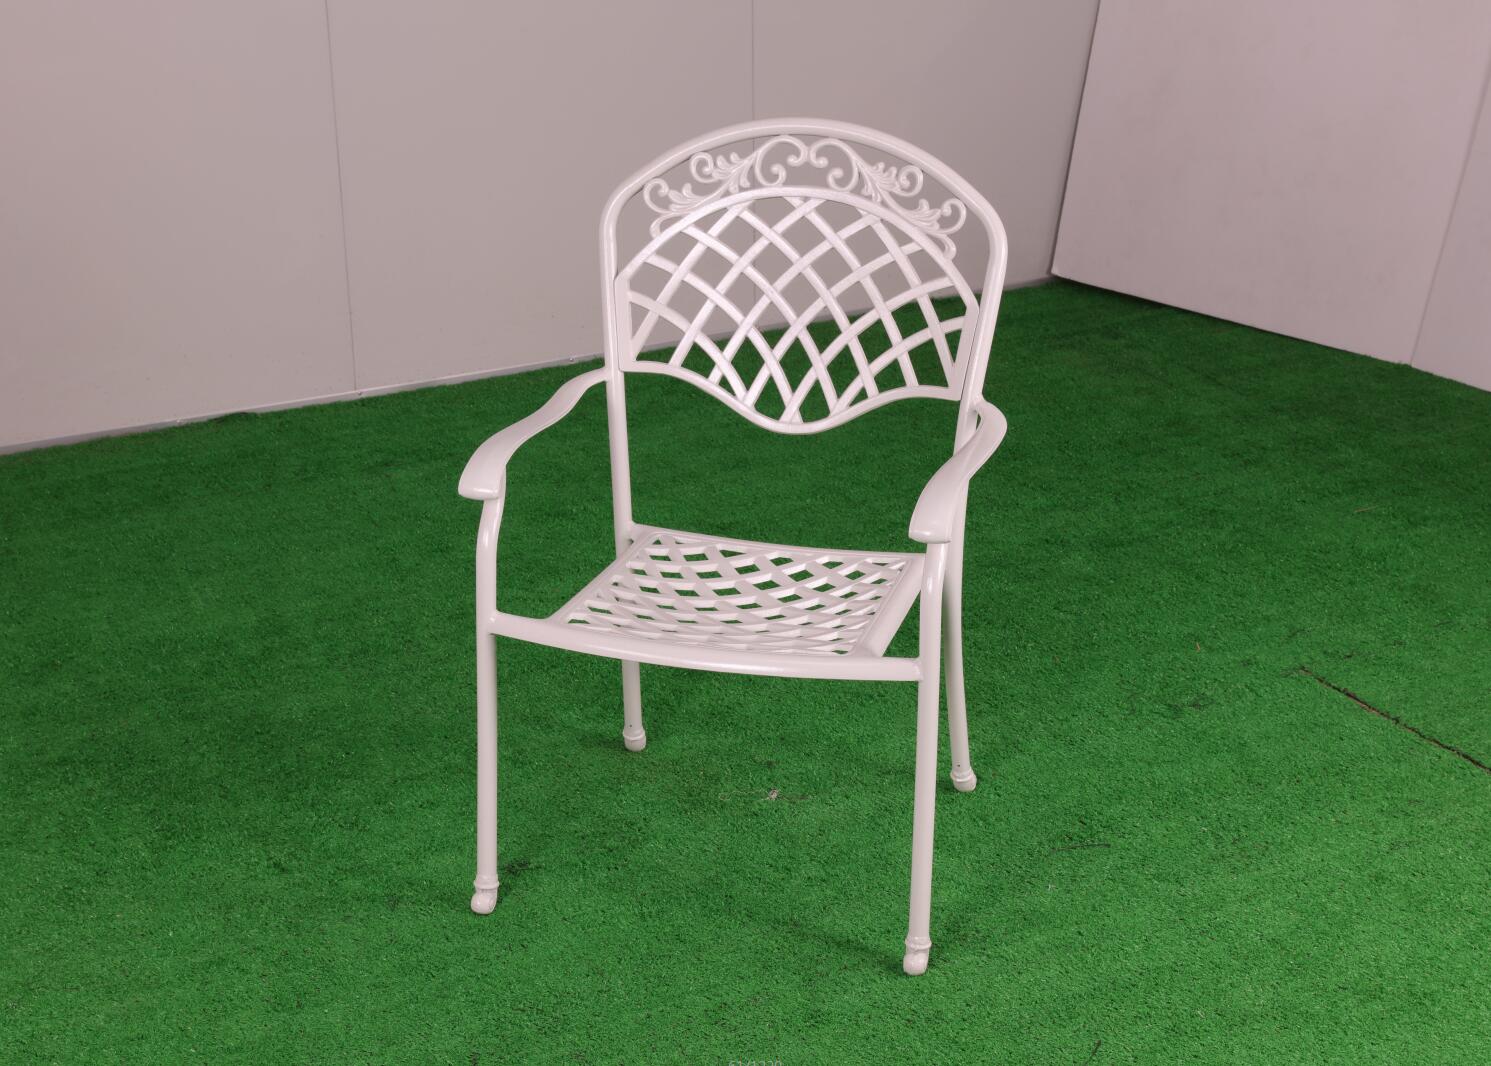 网格铸铝茶几桌椅  户外家具生产定做 户外铸铝家具厂家